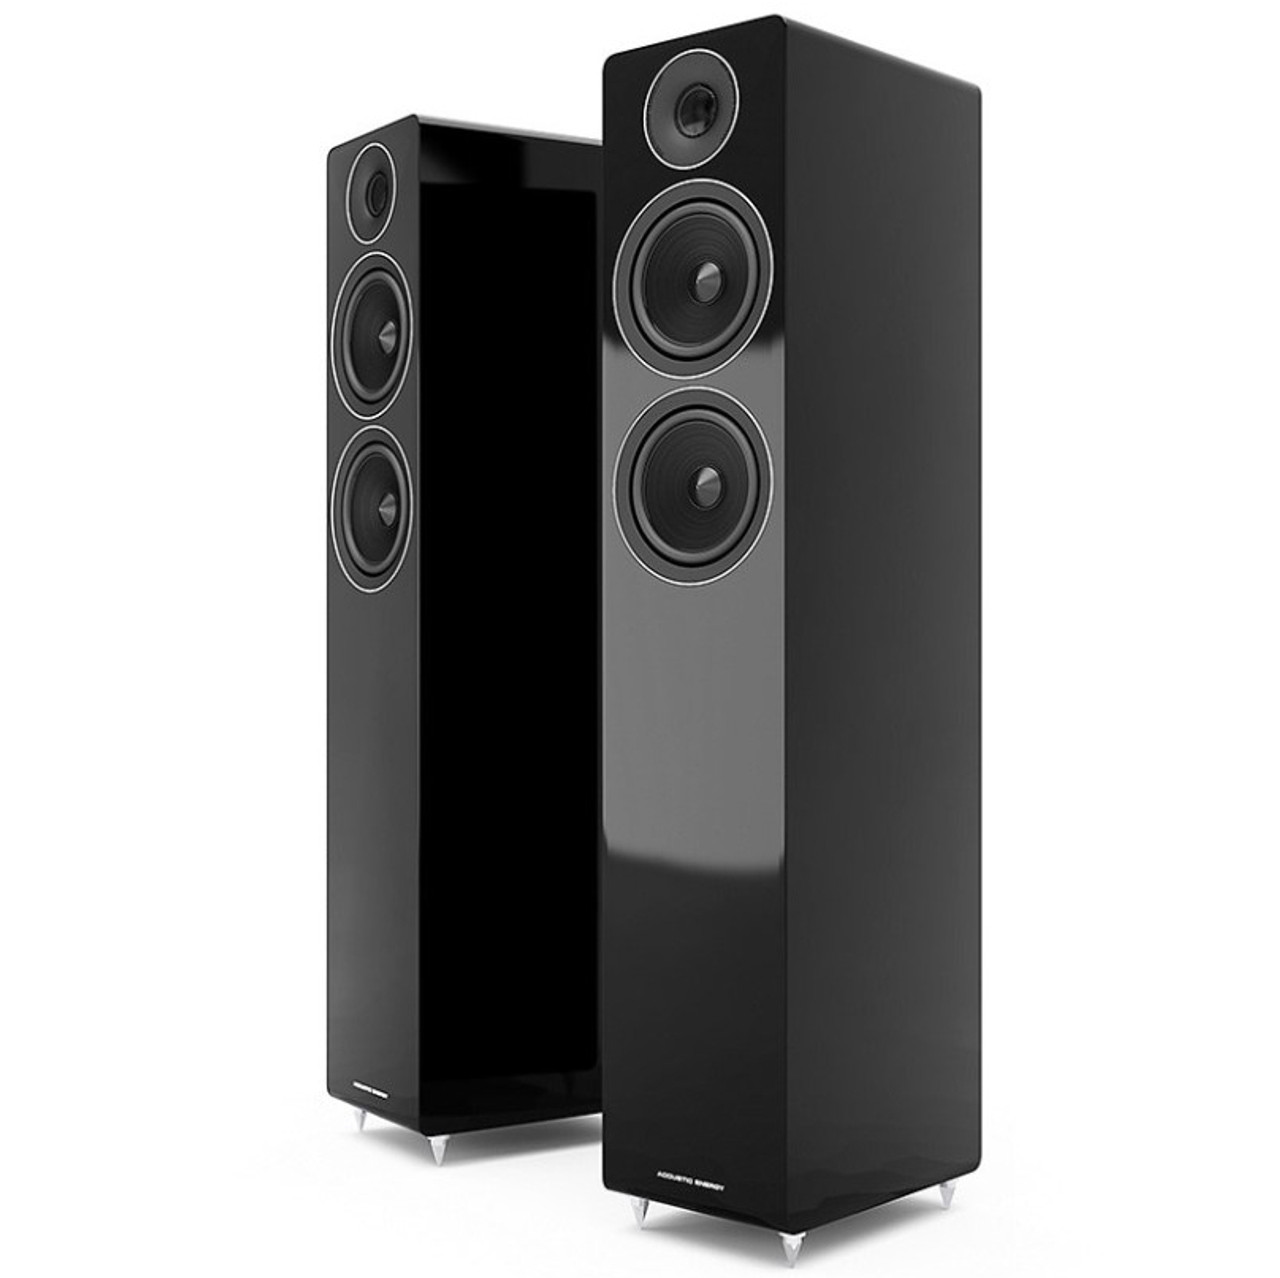 Acoustic Energy AE309 speakers